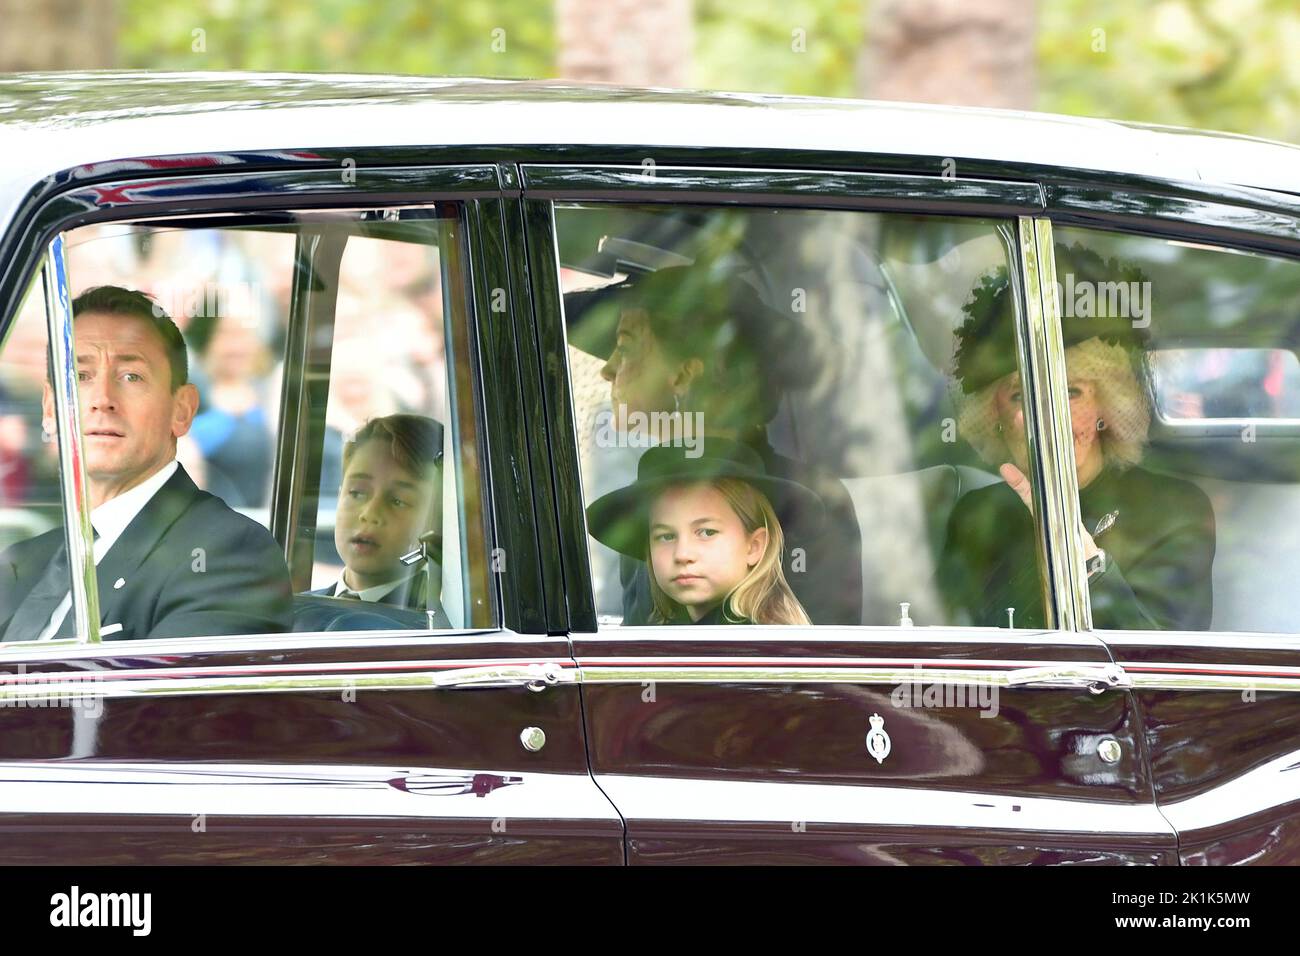 La principessa Charlotte, il principe George, la principessa del Galles e la regina Consort sono viste sul Mall, nel centro di Londra, che arriva lunedì per i funerali della regina Elisabetta II. Data immagine: Lunedì 19 settembre 2022. Foto Stock